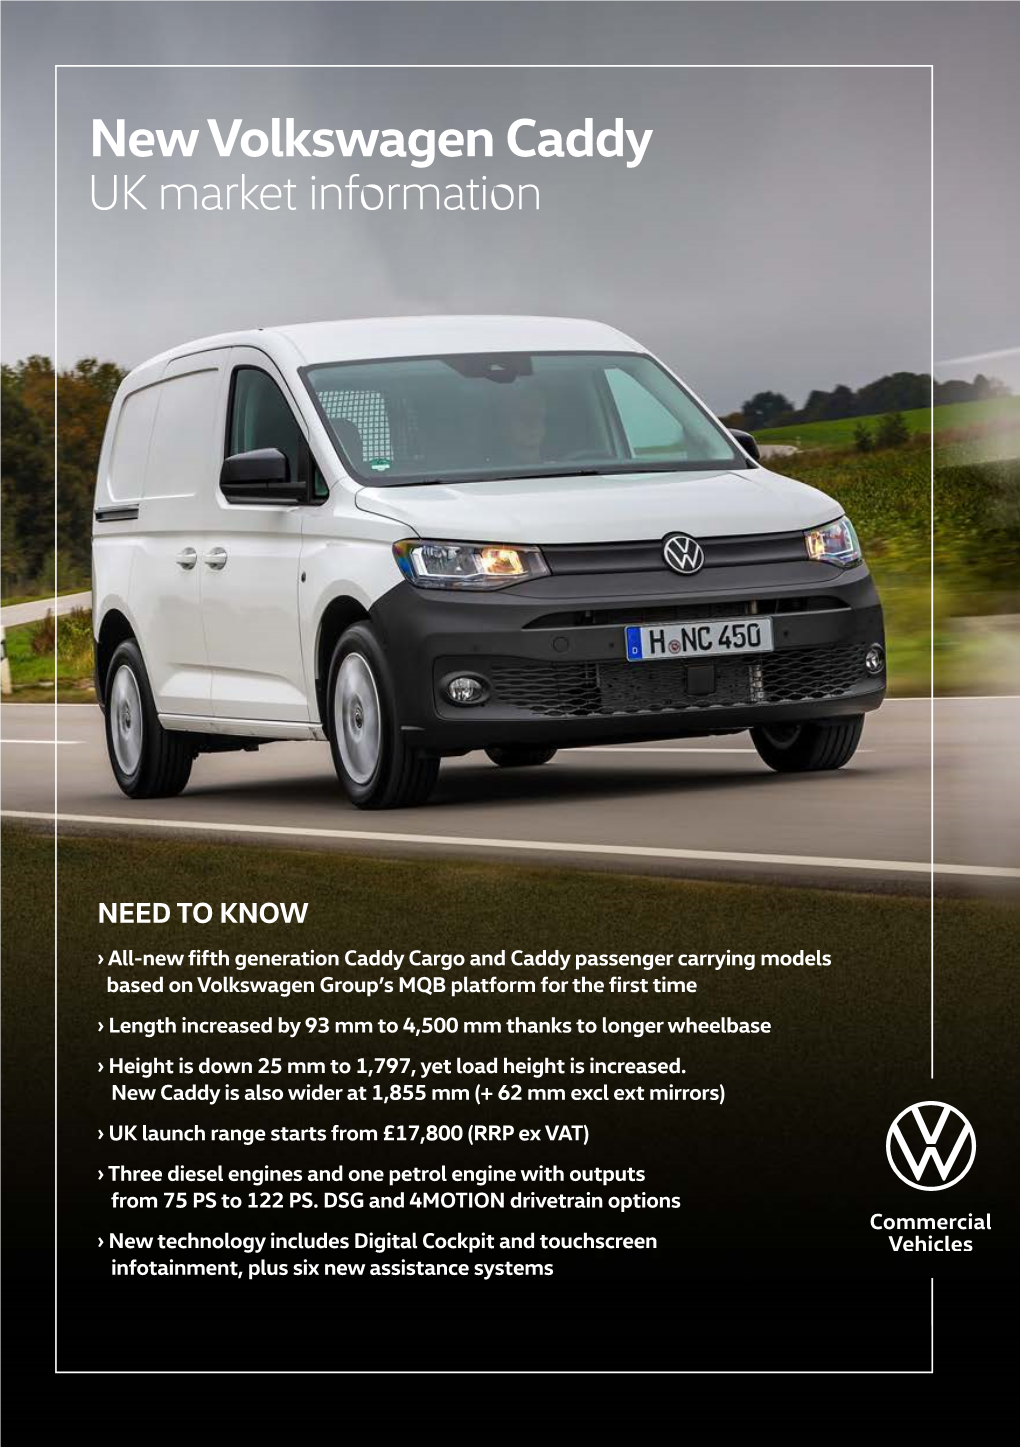 New Volkswagen Caddy UK Market Information